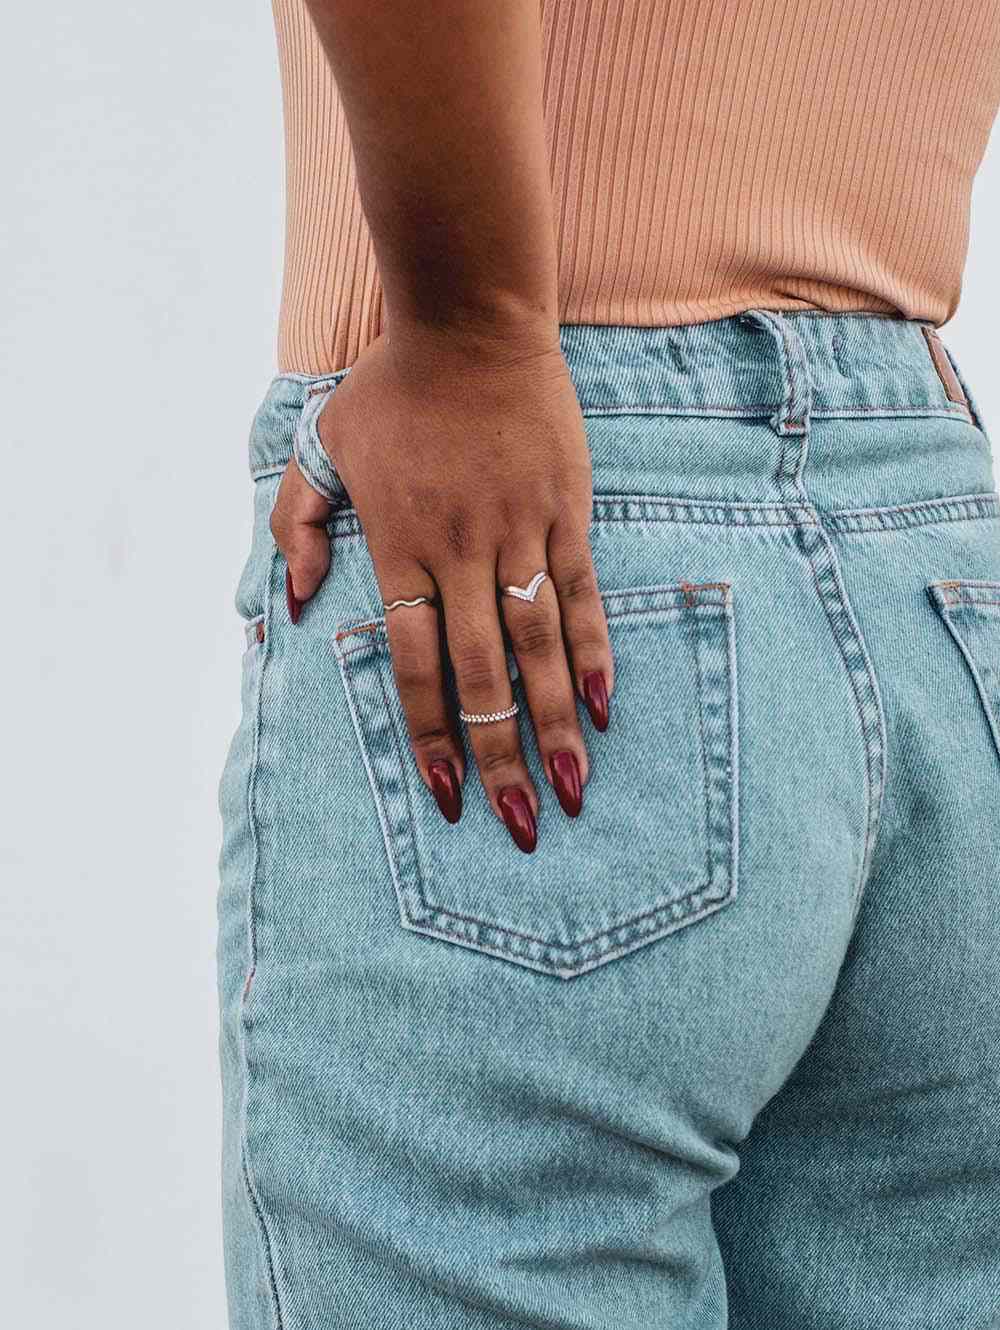 Parte de trás da calça jeans de mulher com as mãos no bolso de trás